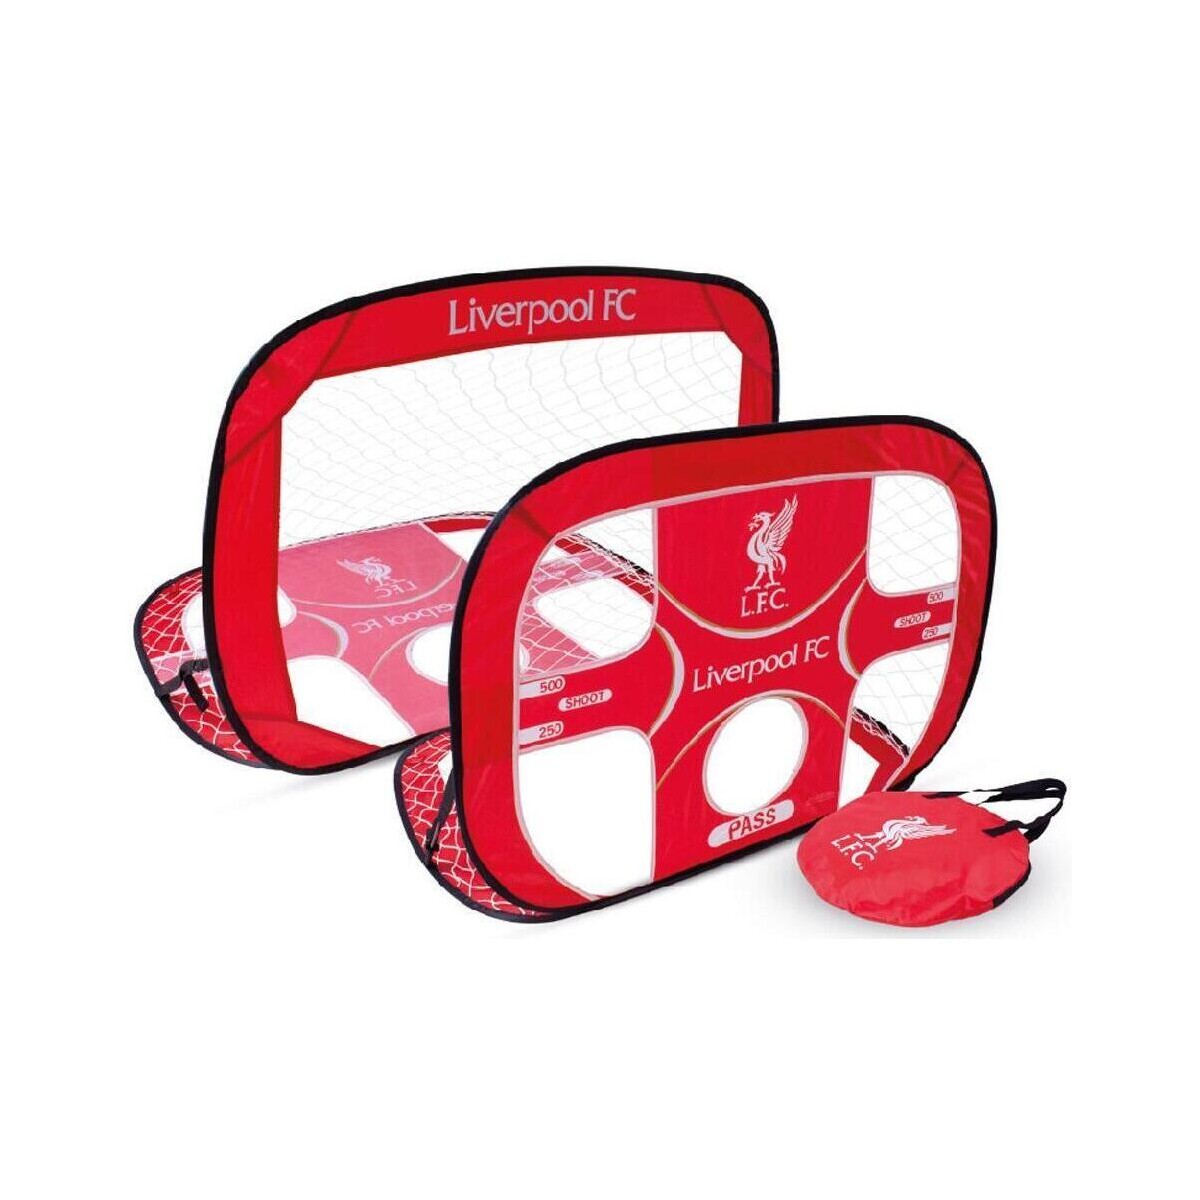 Accessoires Accessoires sport Liverpool Fc TA6515 Rouge